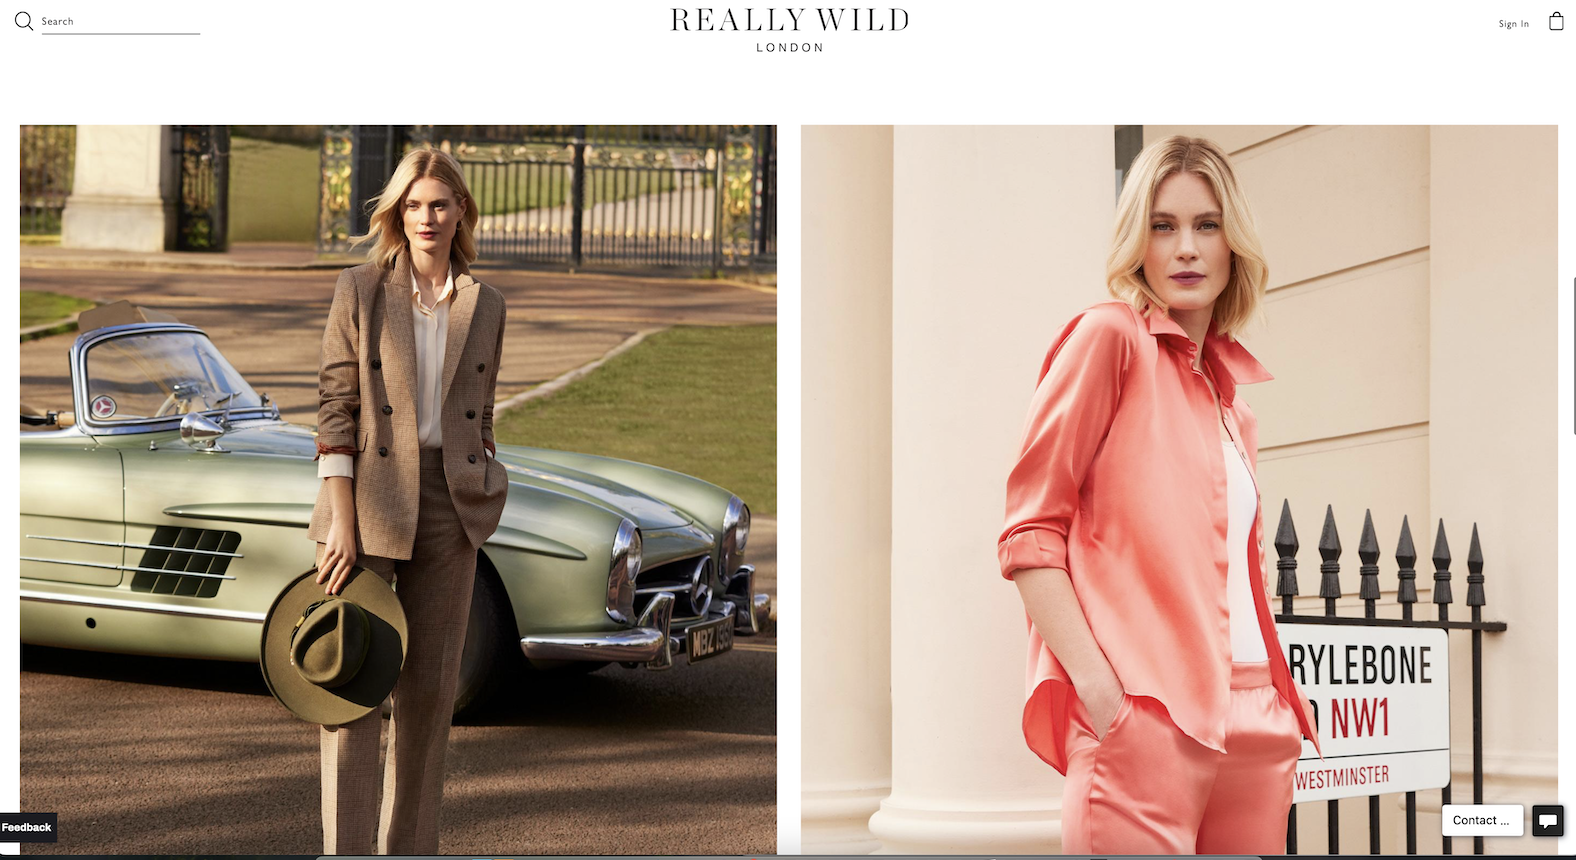 施华洛世奇家族第五代收购英国女装品牌 Really Wild 多数股权